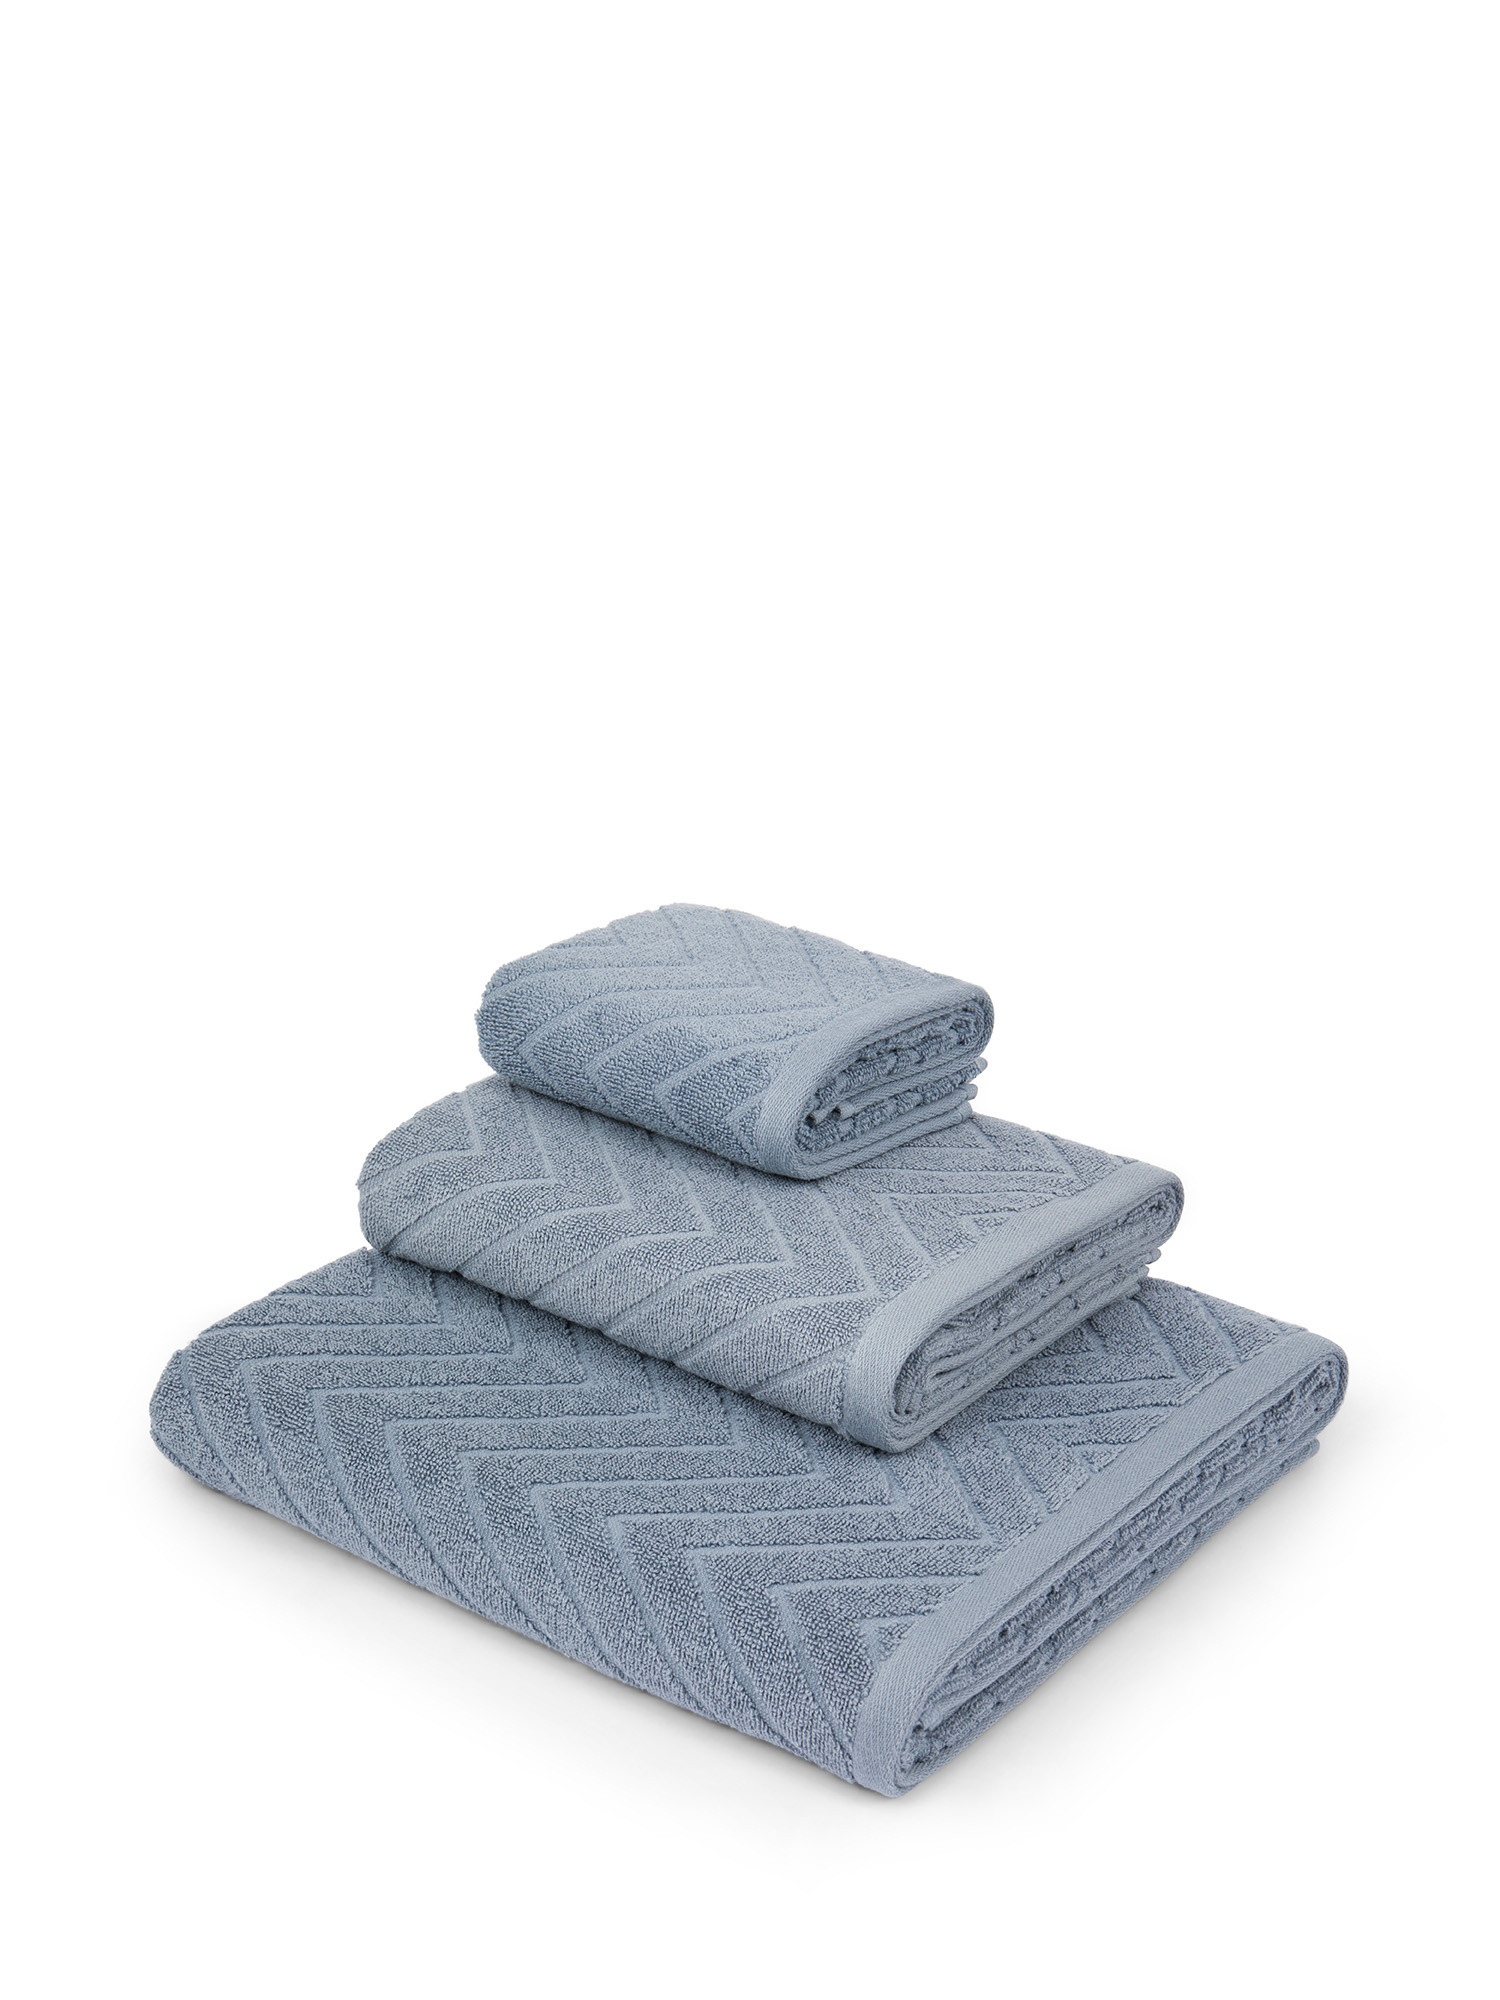 Asciugamano in spugna di cotone con disegno Jacquard, Azzurro, large image number 0